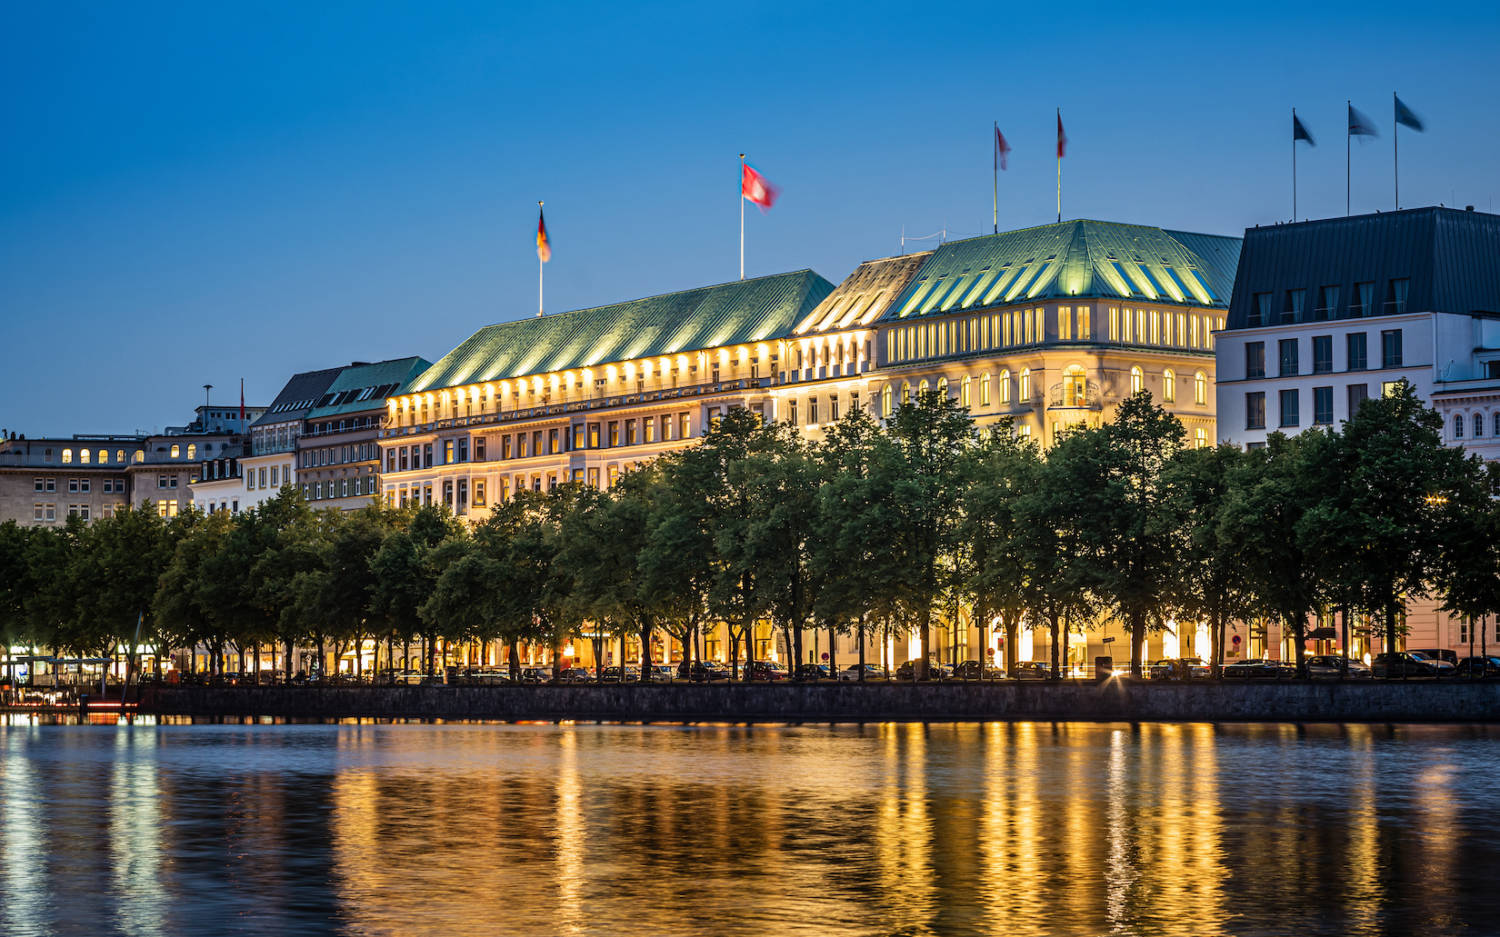 Das imposante. Hotel Vier Jahreszeiten an der Binnenalster / ©Gerrit Meier